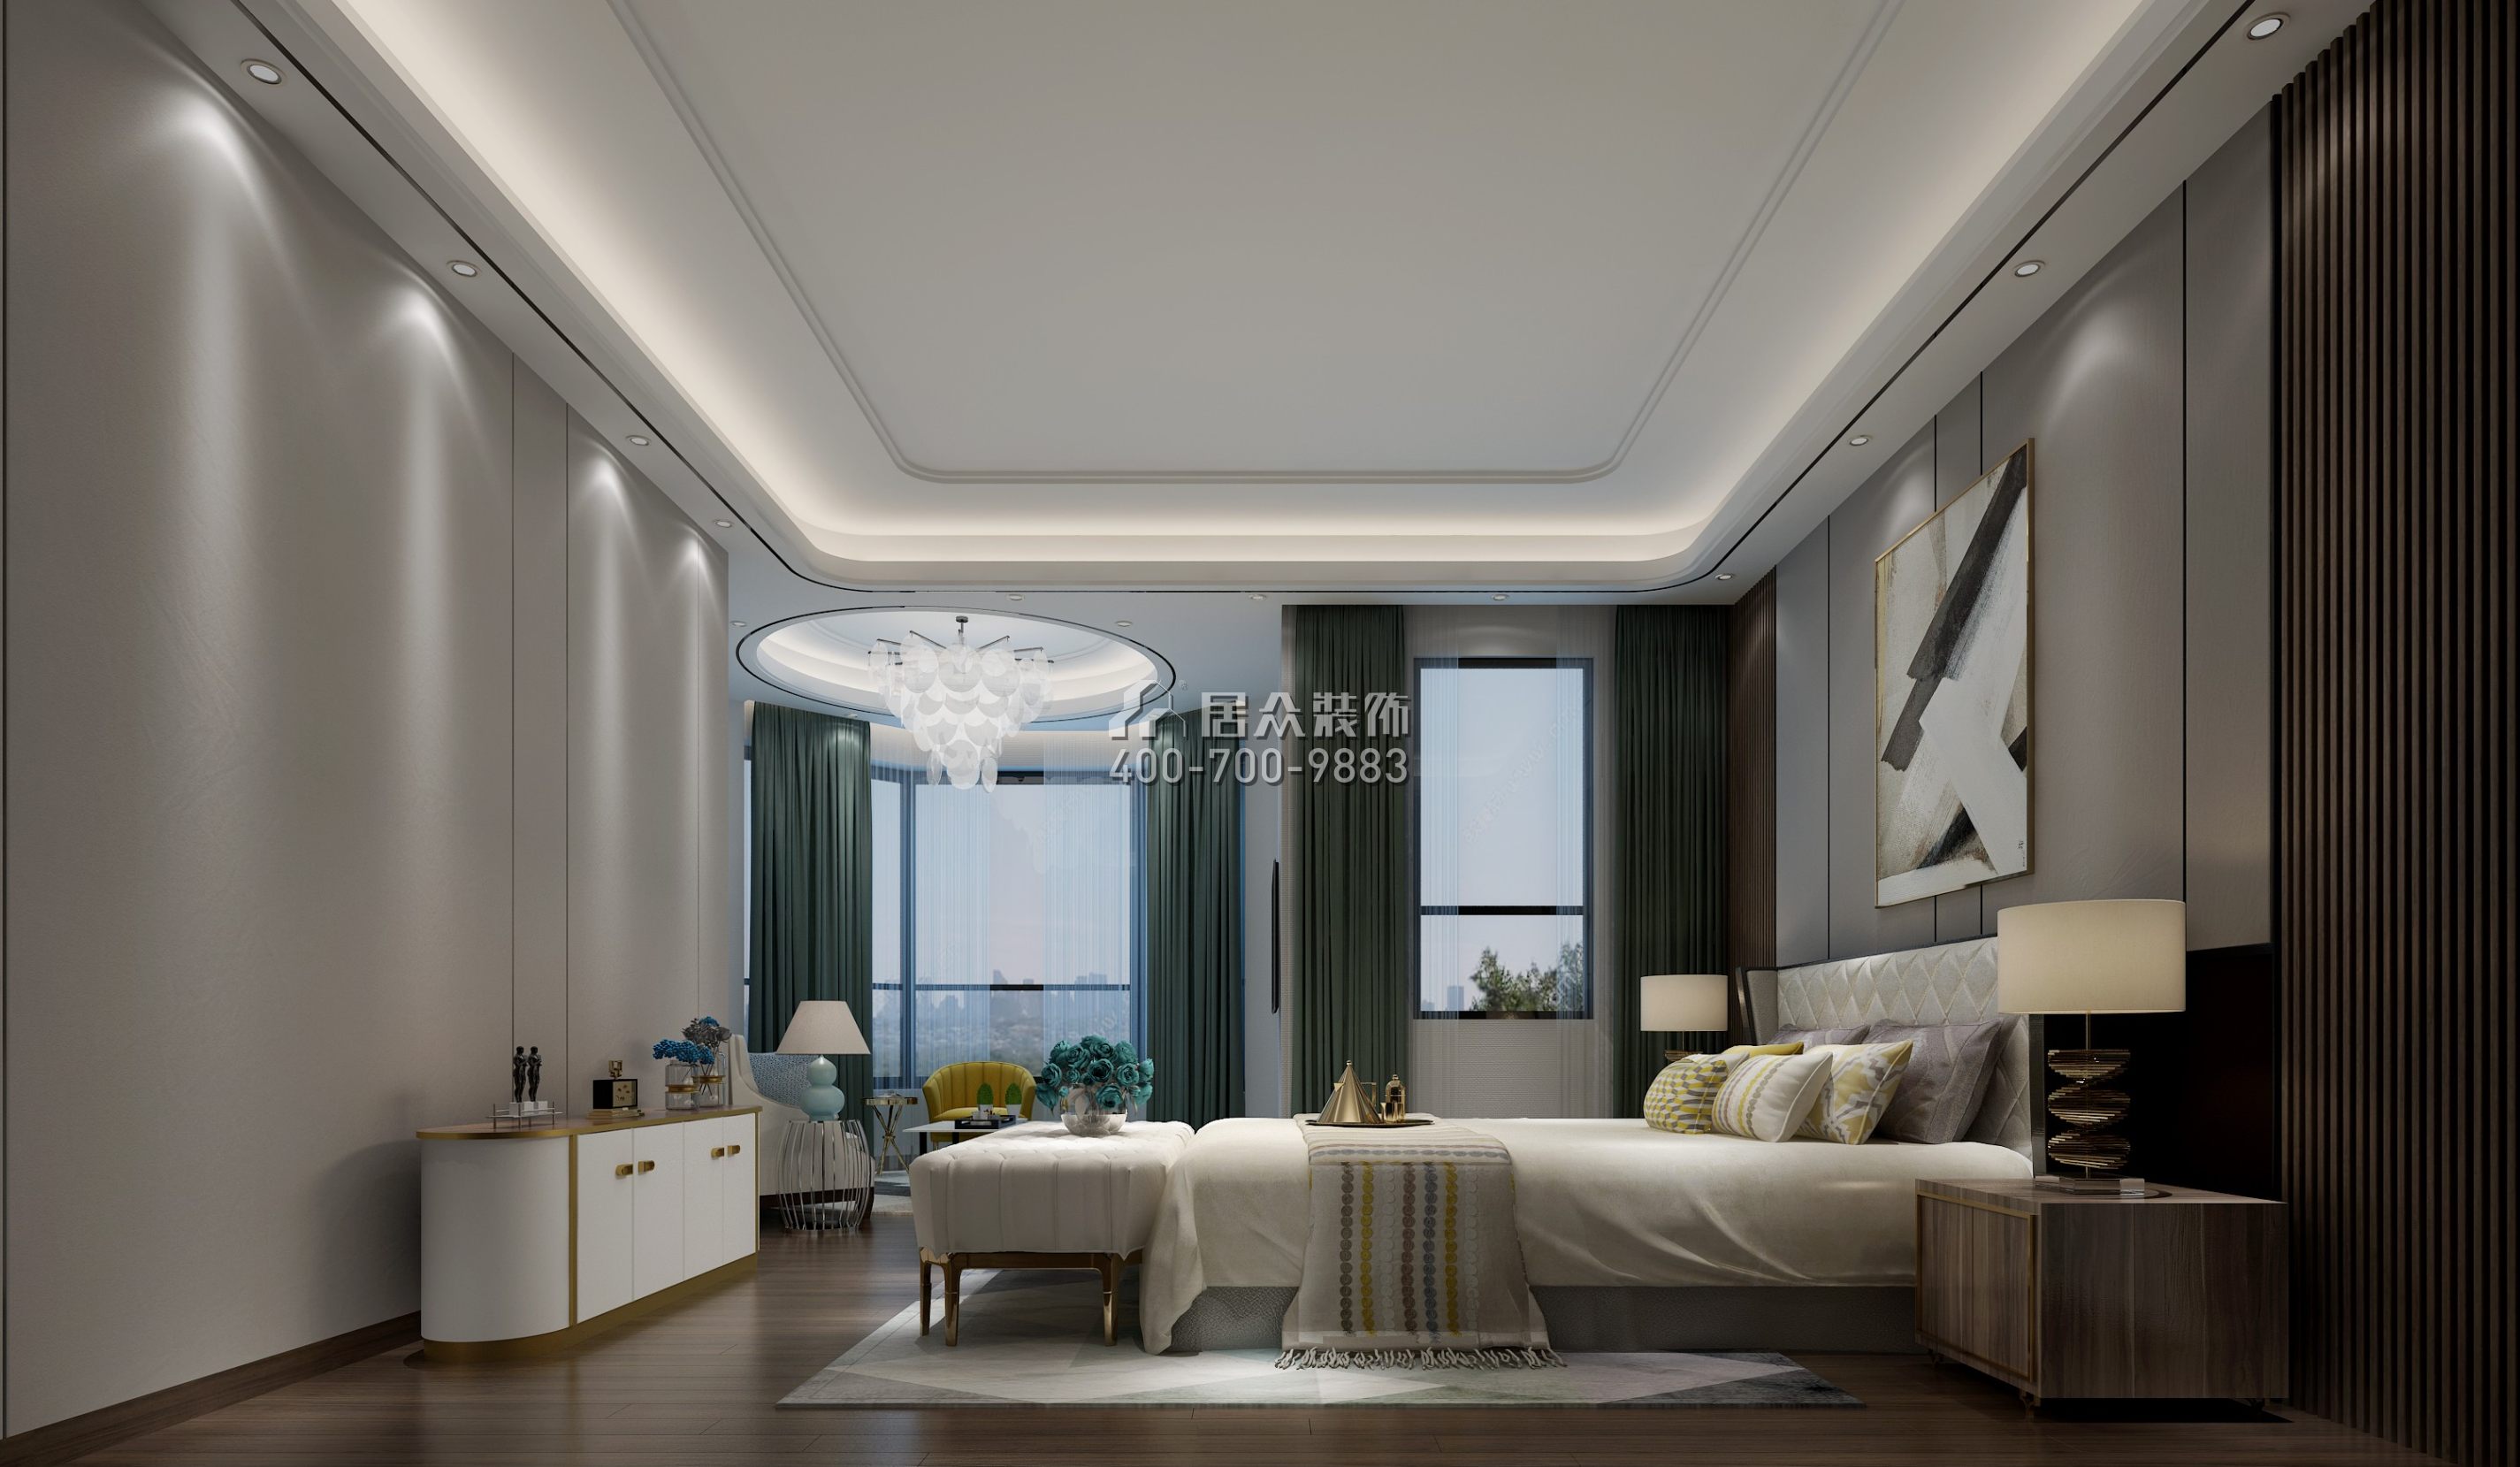 世纪城国际公馆388平方米现代简约风格平层户型卧室装修效果图